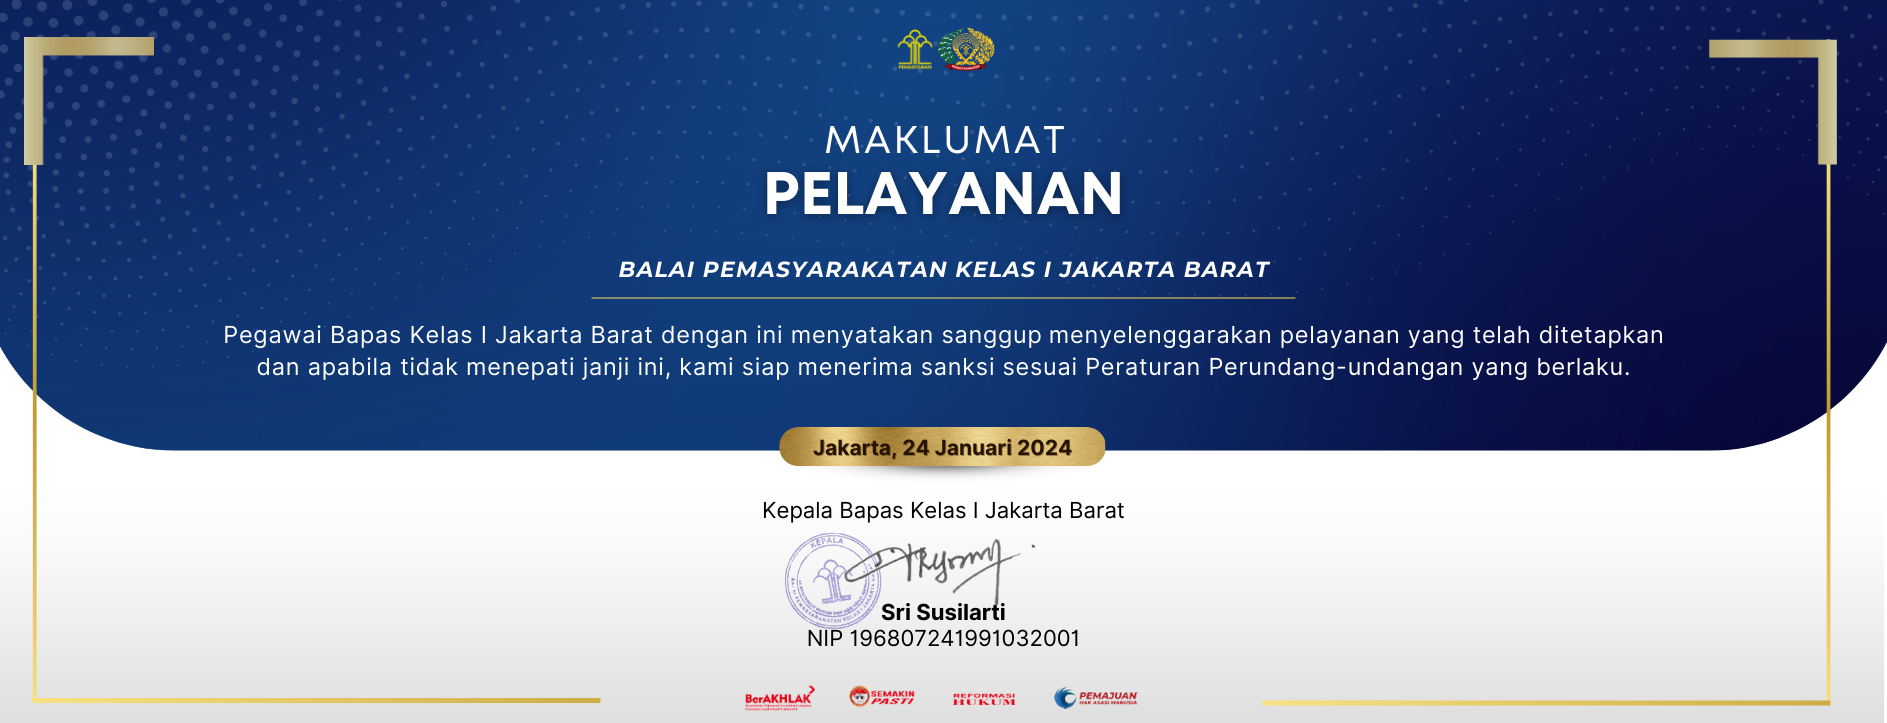 maklumat_pelayanan_website